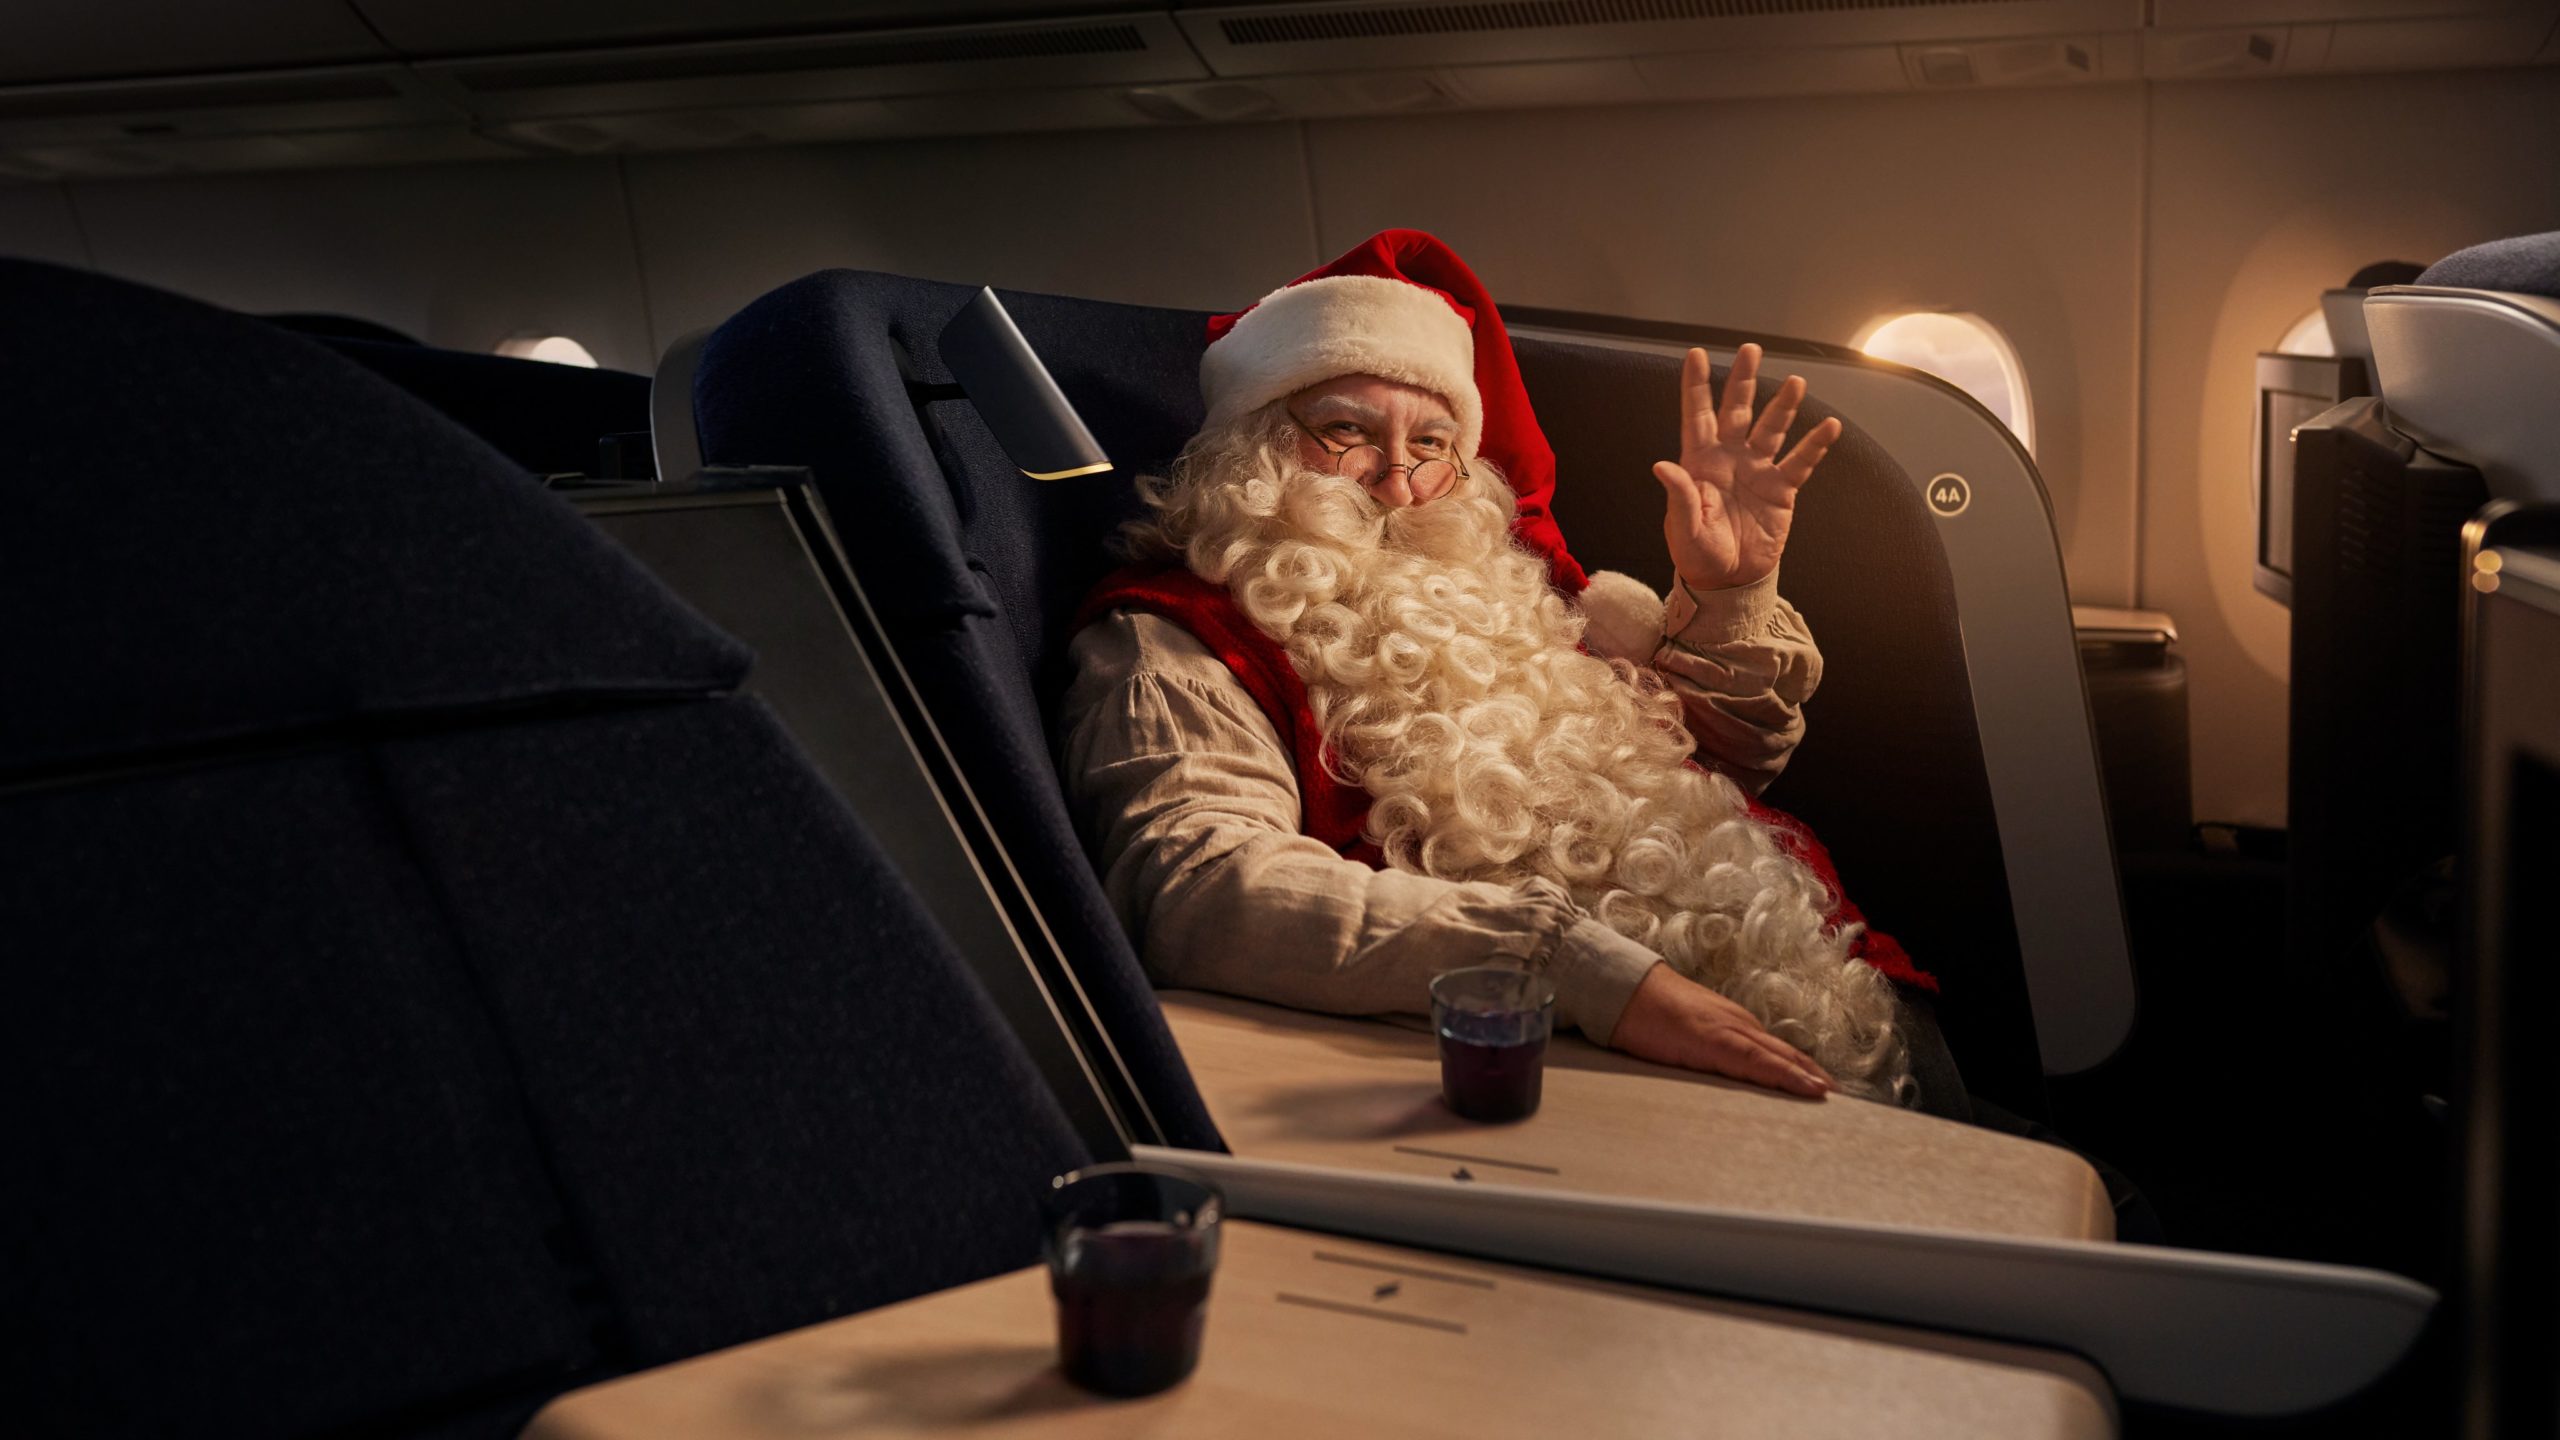 Este ano, o Papai Noel voará com a Finnair, a companhia aérea oficial do Santa Claus para entregar todos os presentes no dia 25 de dezembro.